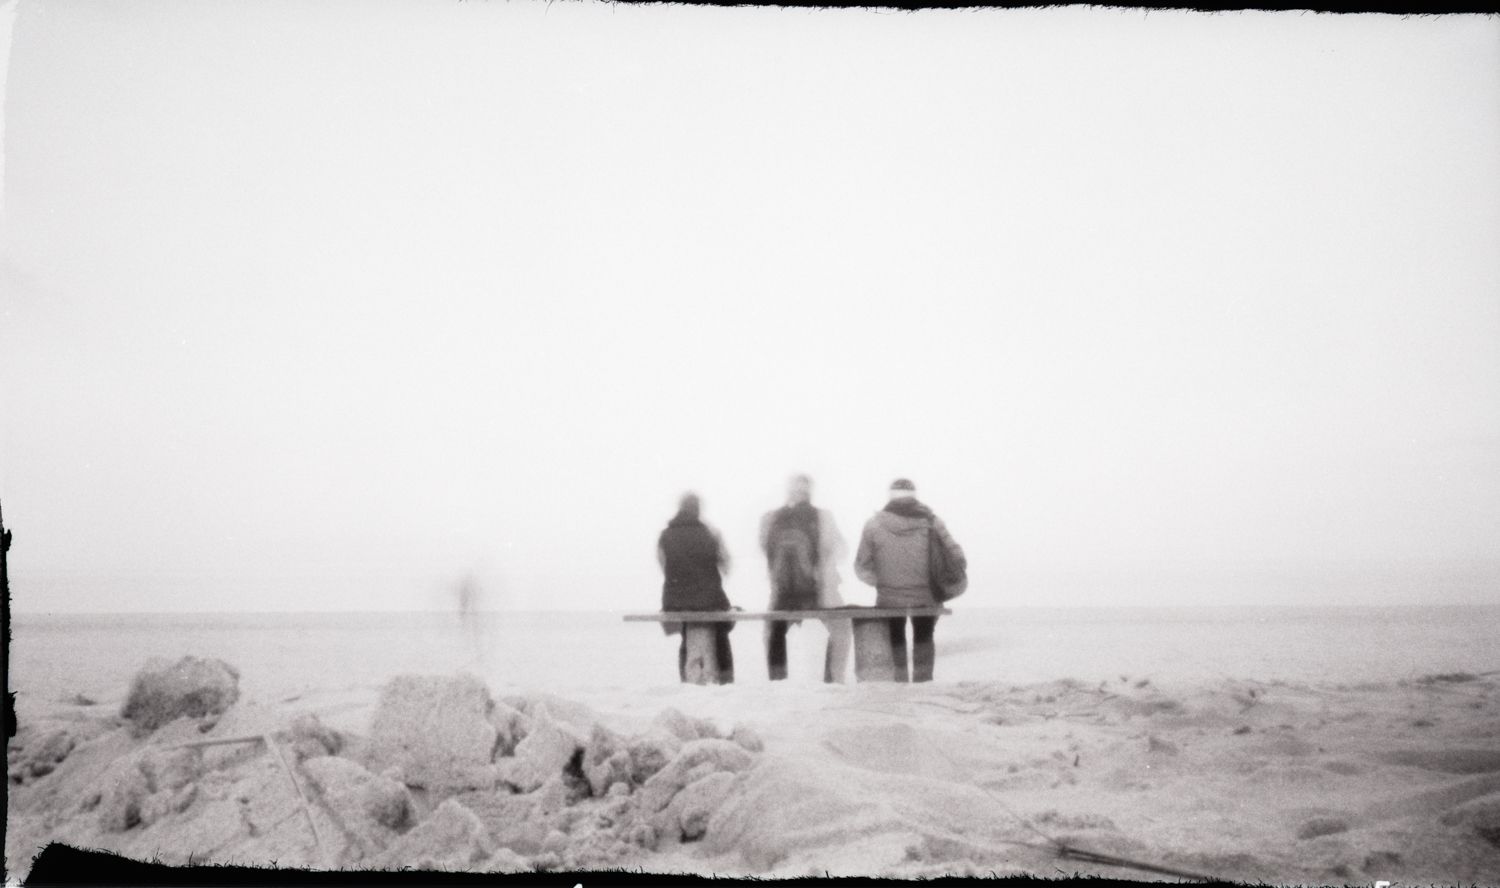 Auf einer Bank Sitzende, auf das Meer blickende Menschen an der Ostsee mit der Lochkamera aufgenommen.